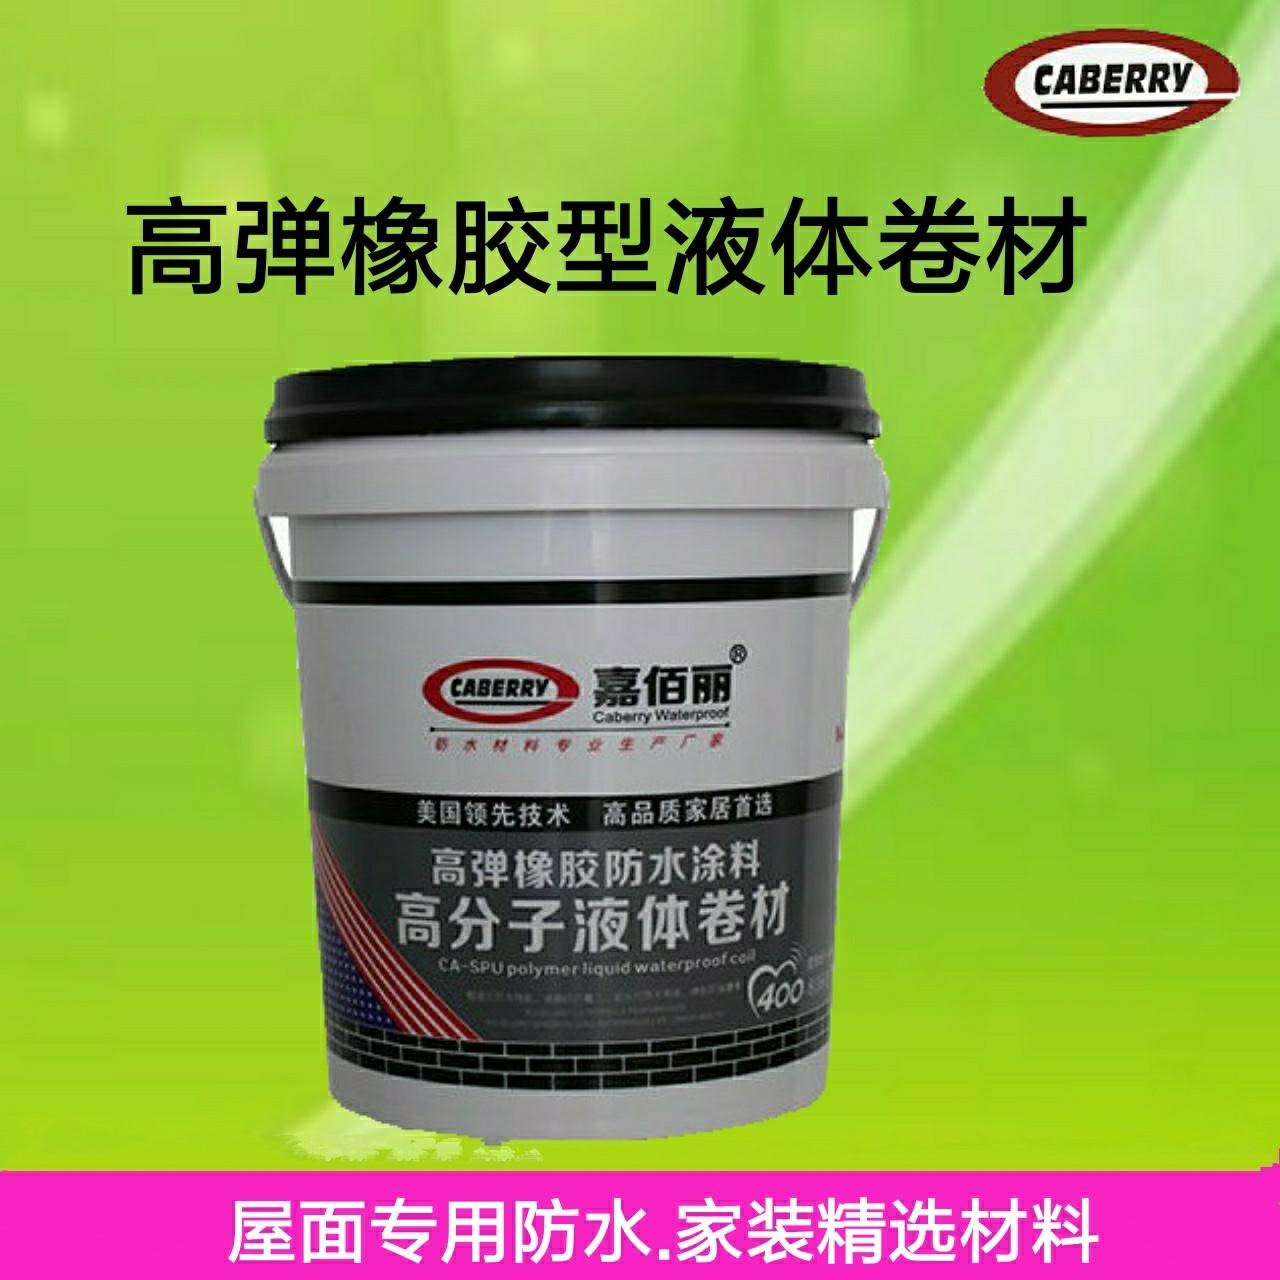 贵州供应 单组份高聚物sbs水性橡胶液体卷材 厂家 发货快